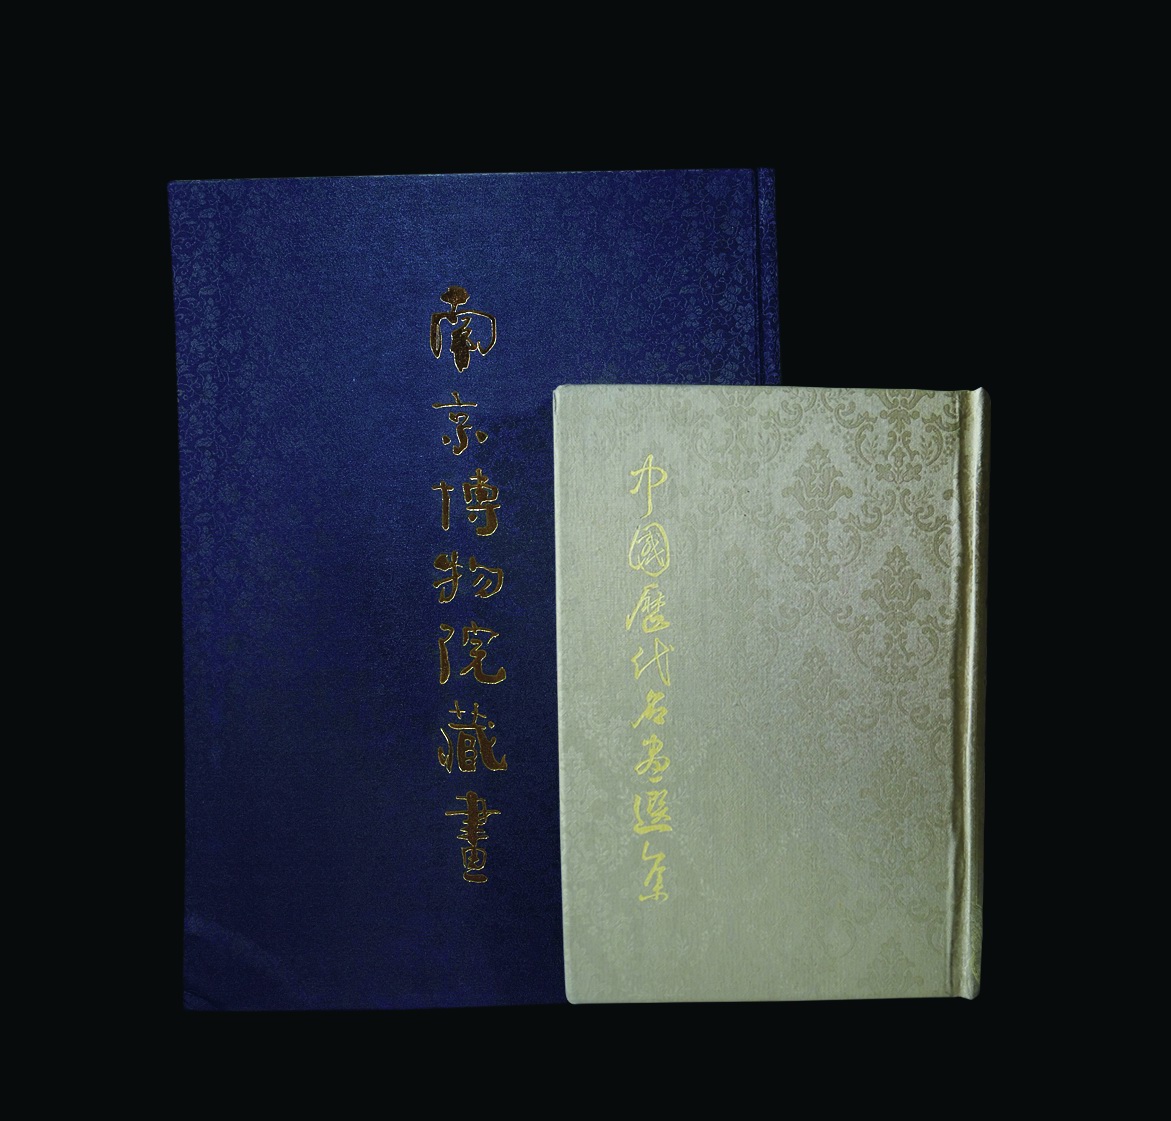 原函布面烫金《南京博物院藏画》、原盒布面精装《中国历